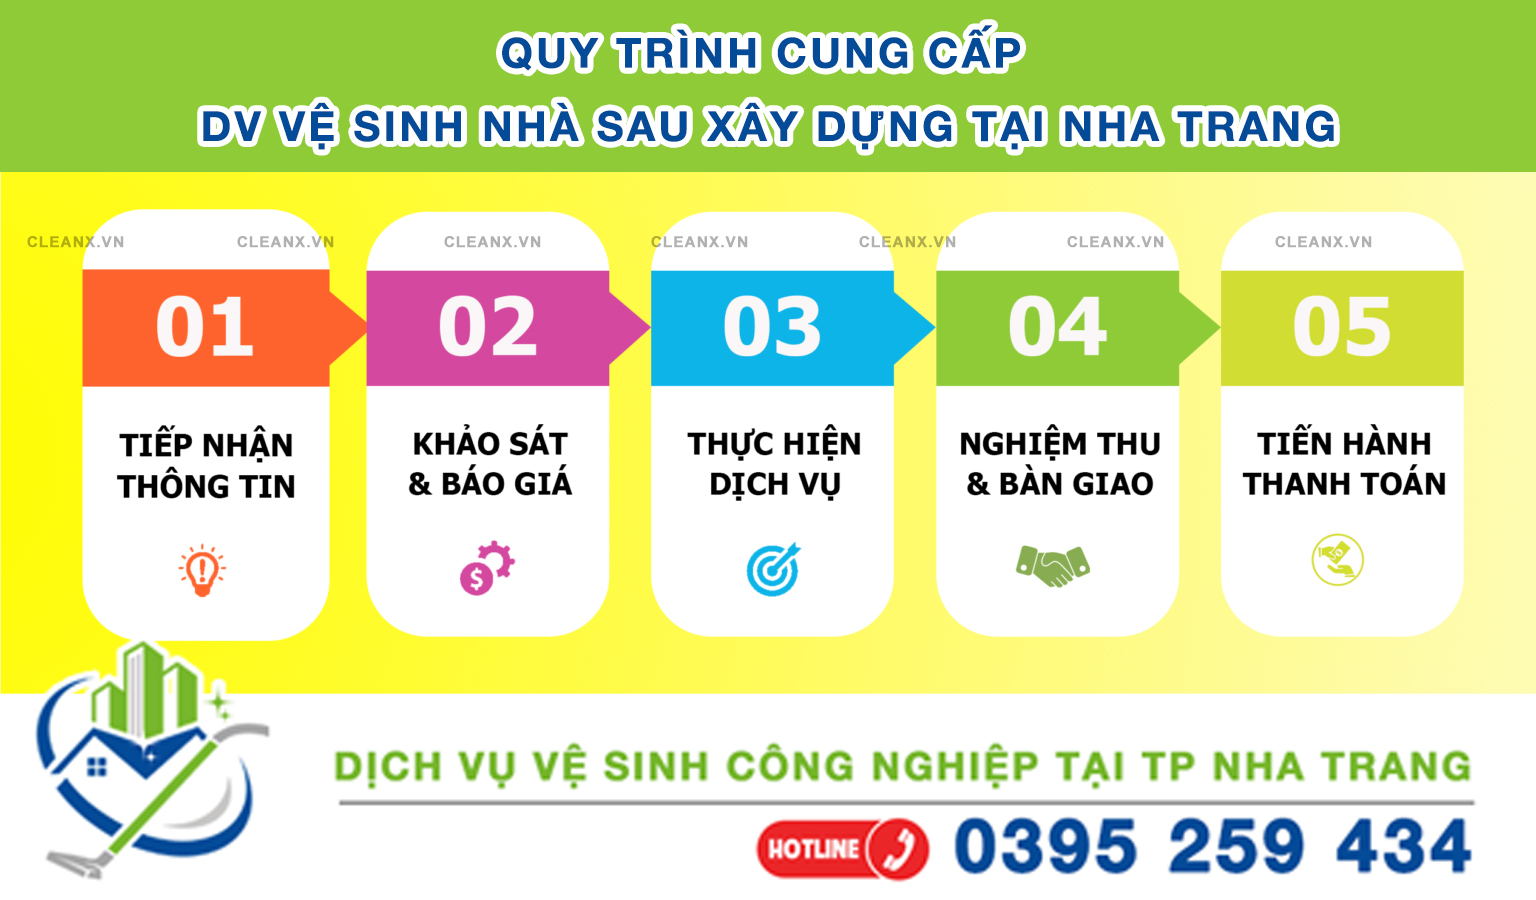 Quy trình cung cấp dịch vụ vệ sinh nhà sau xây dựng tại Nha Trang